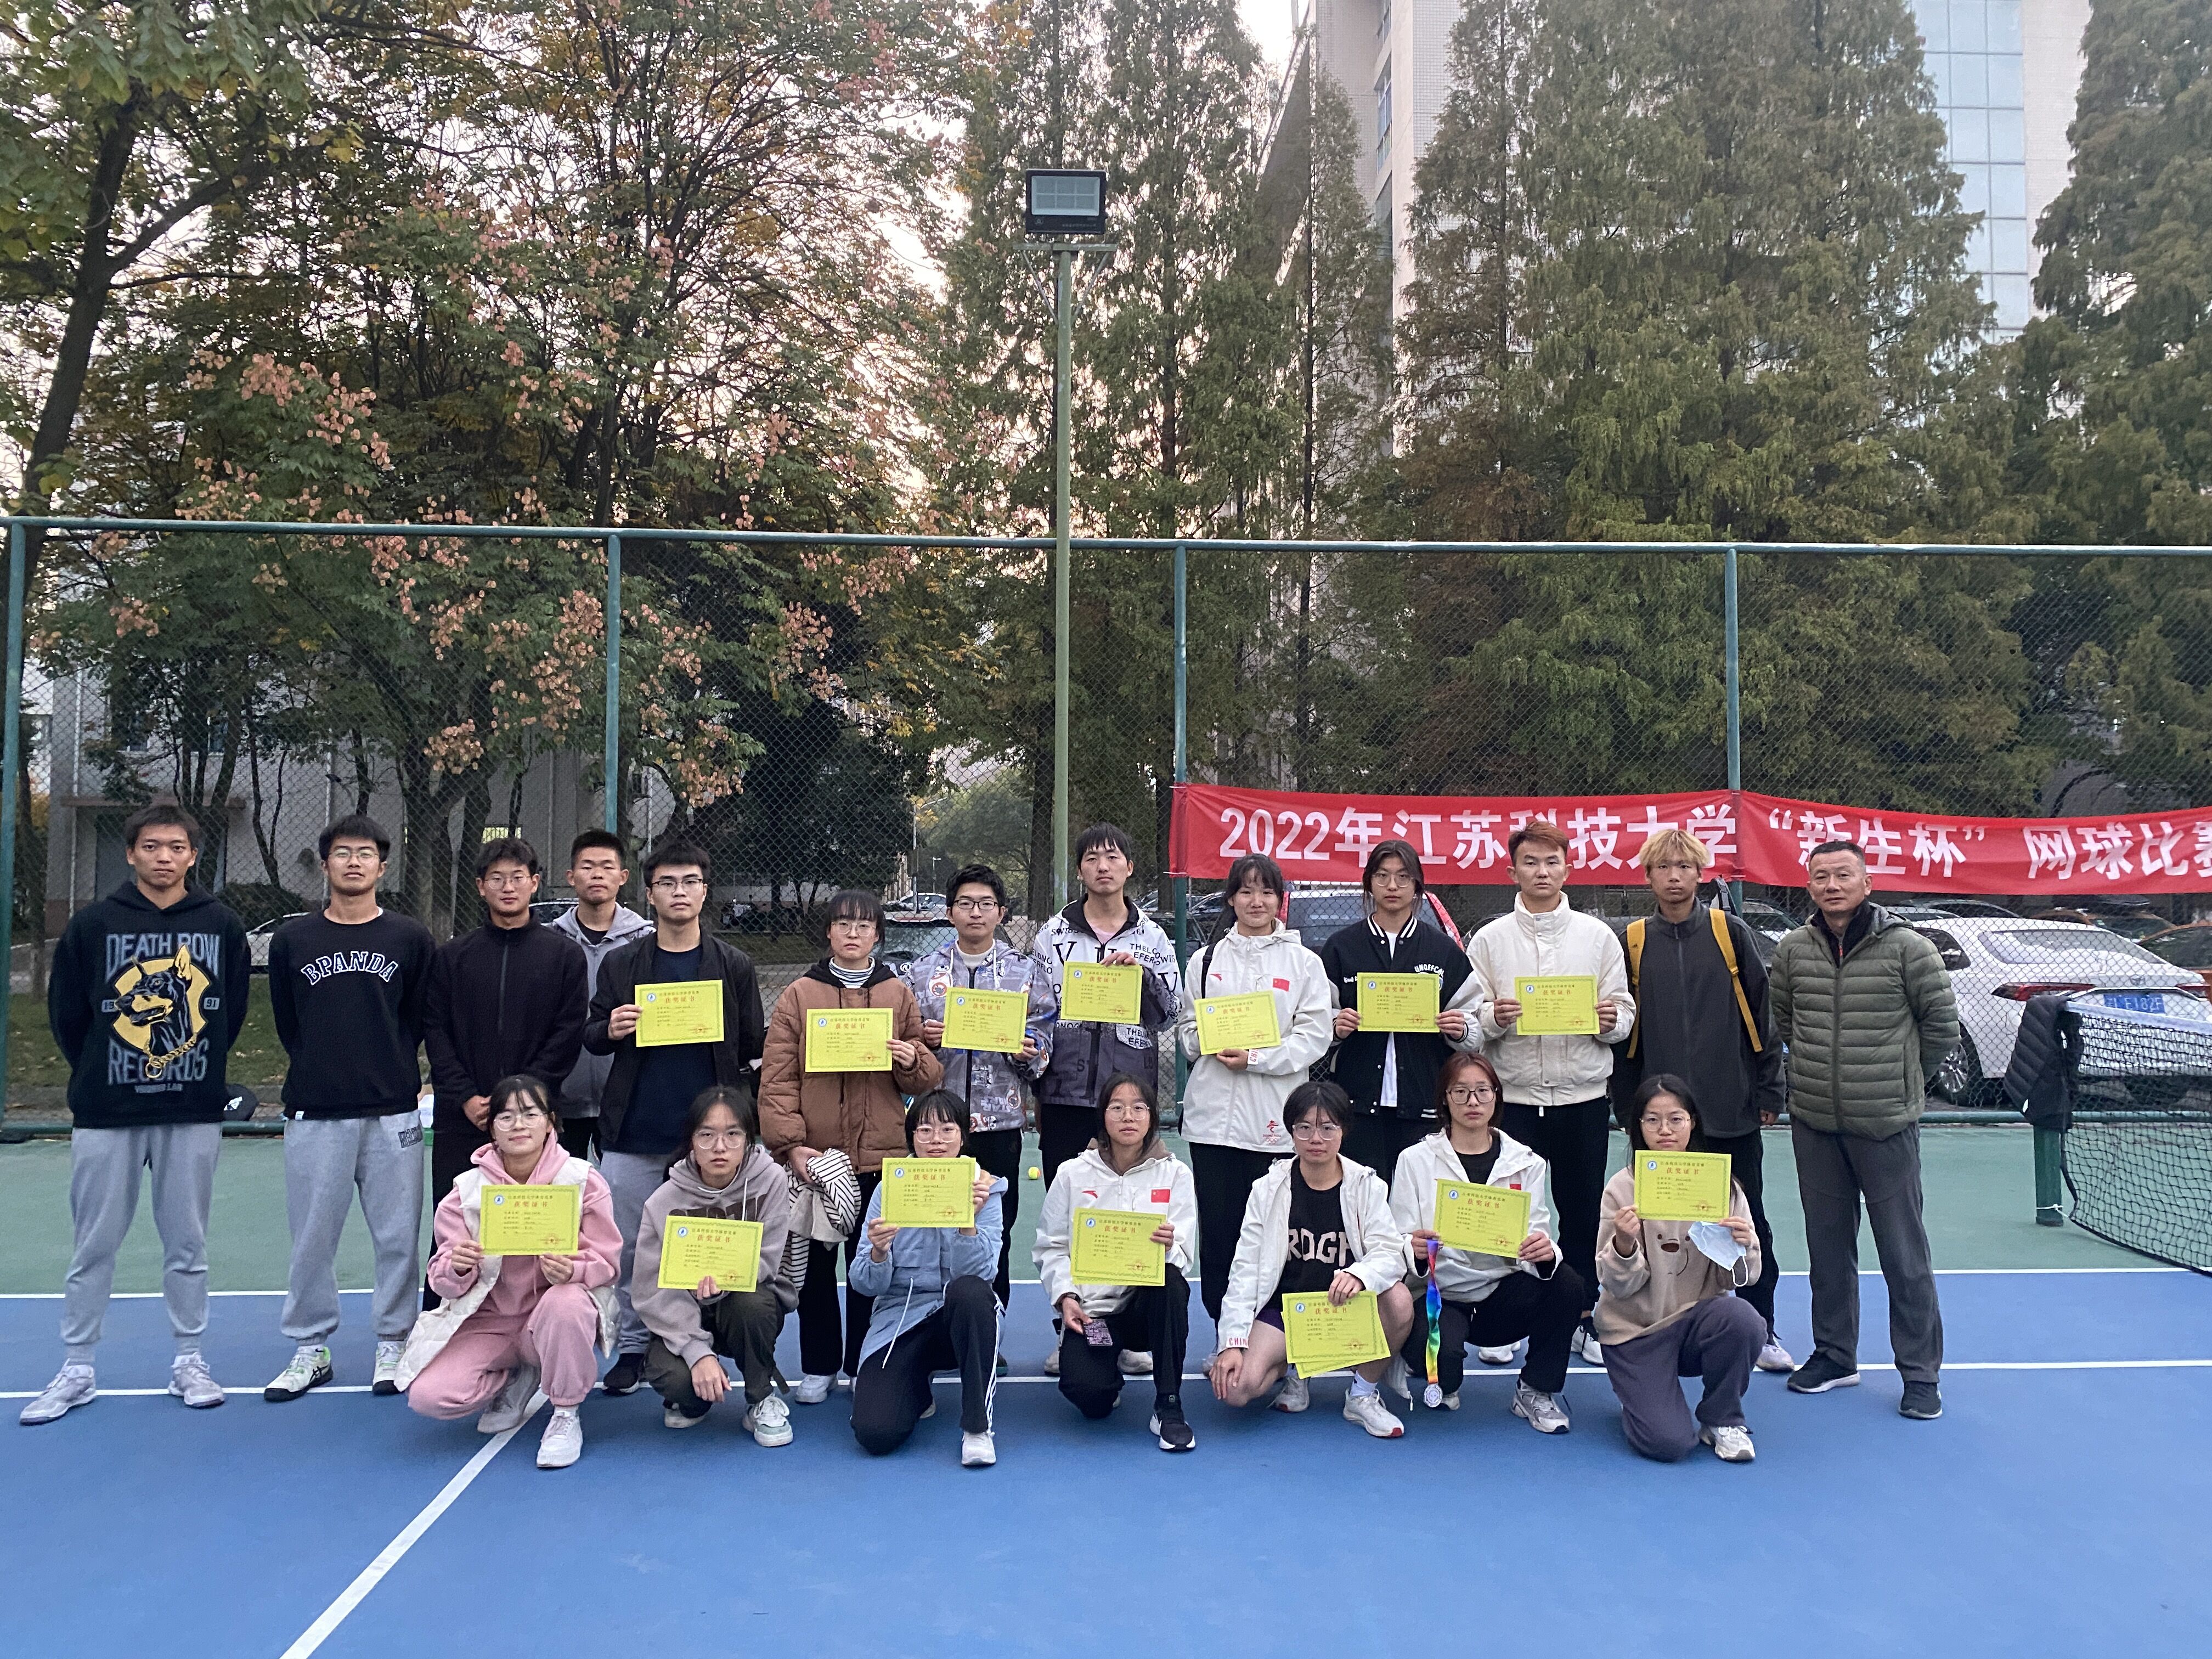 2022年江苏科技大学新生杯网球比赛圆满结束